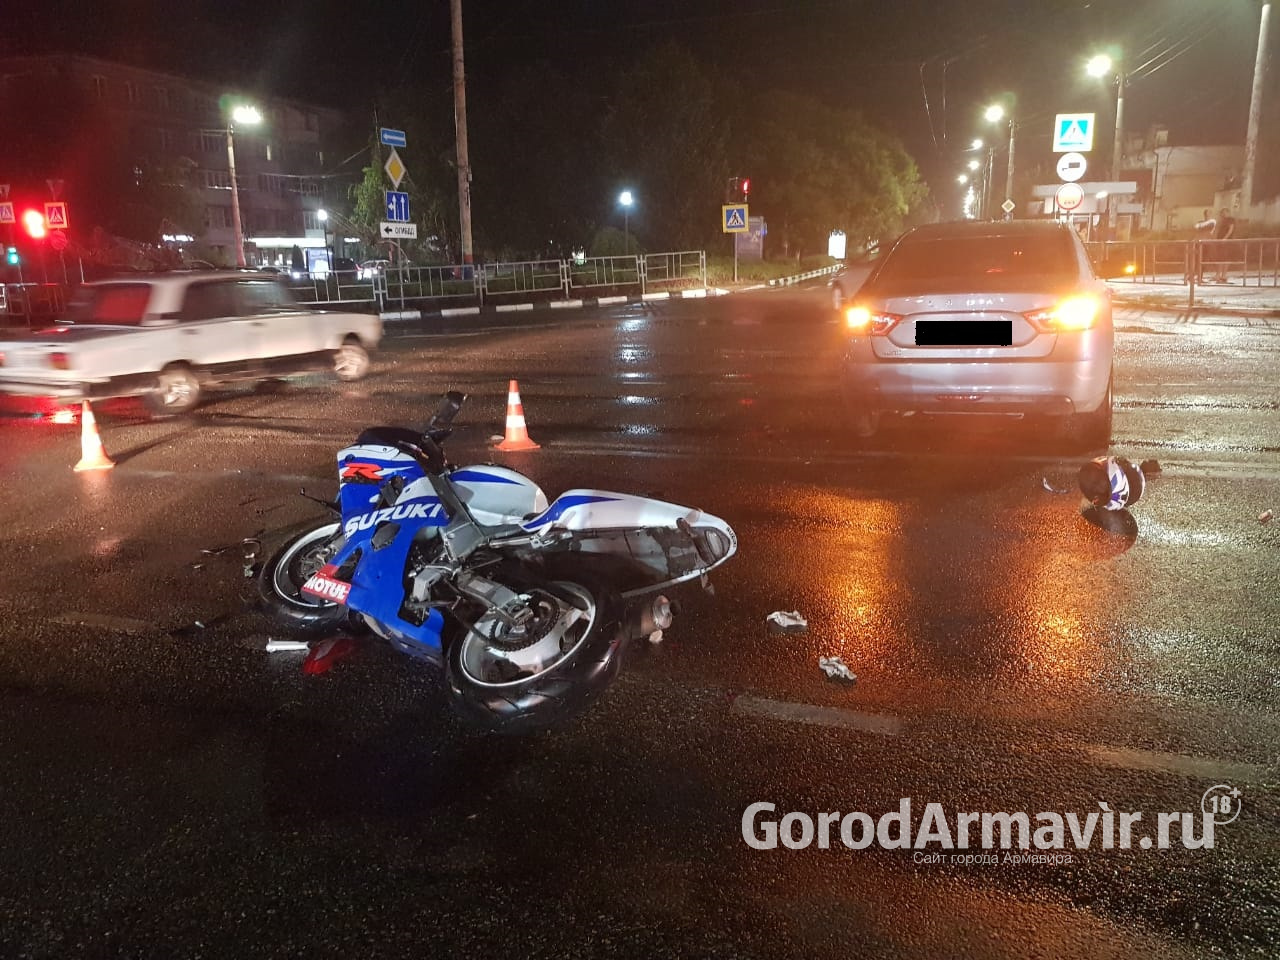 В Армавире мотоциклист проехал на красный сигнал светофора и врезался в авто 